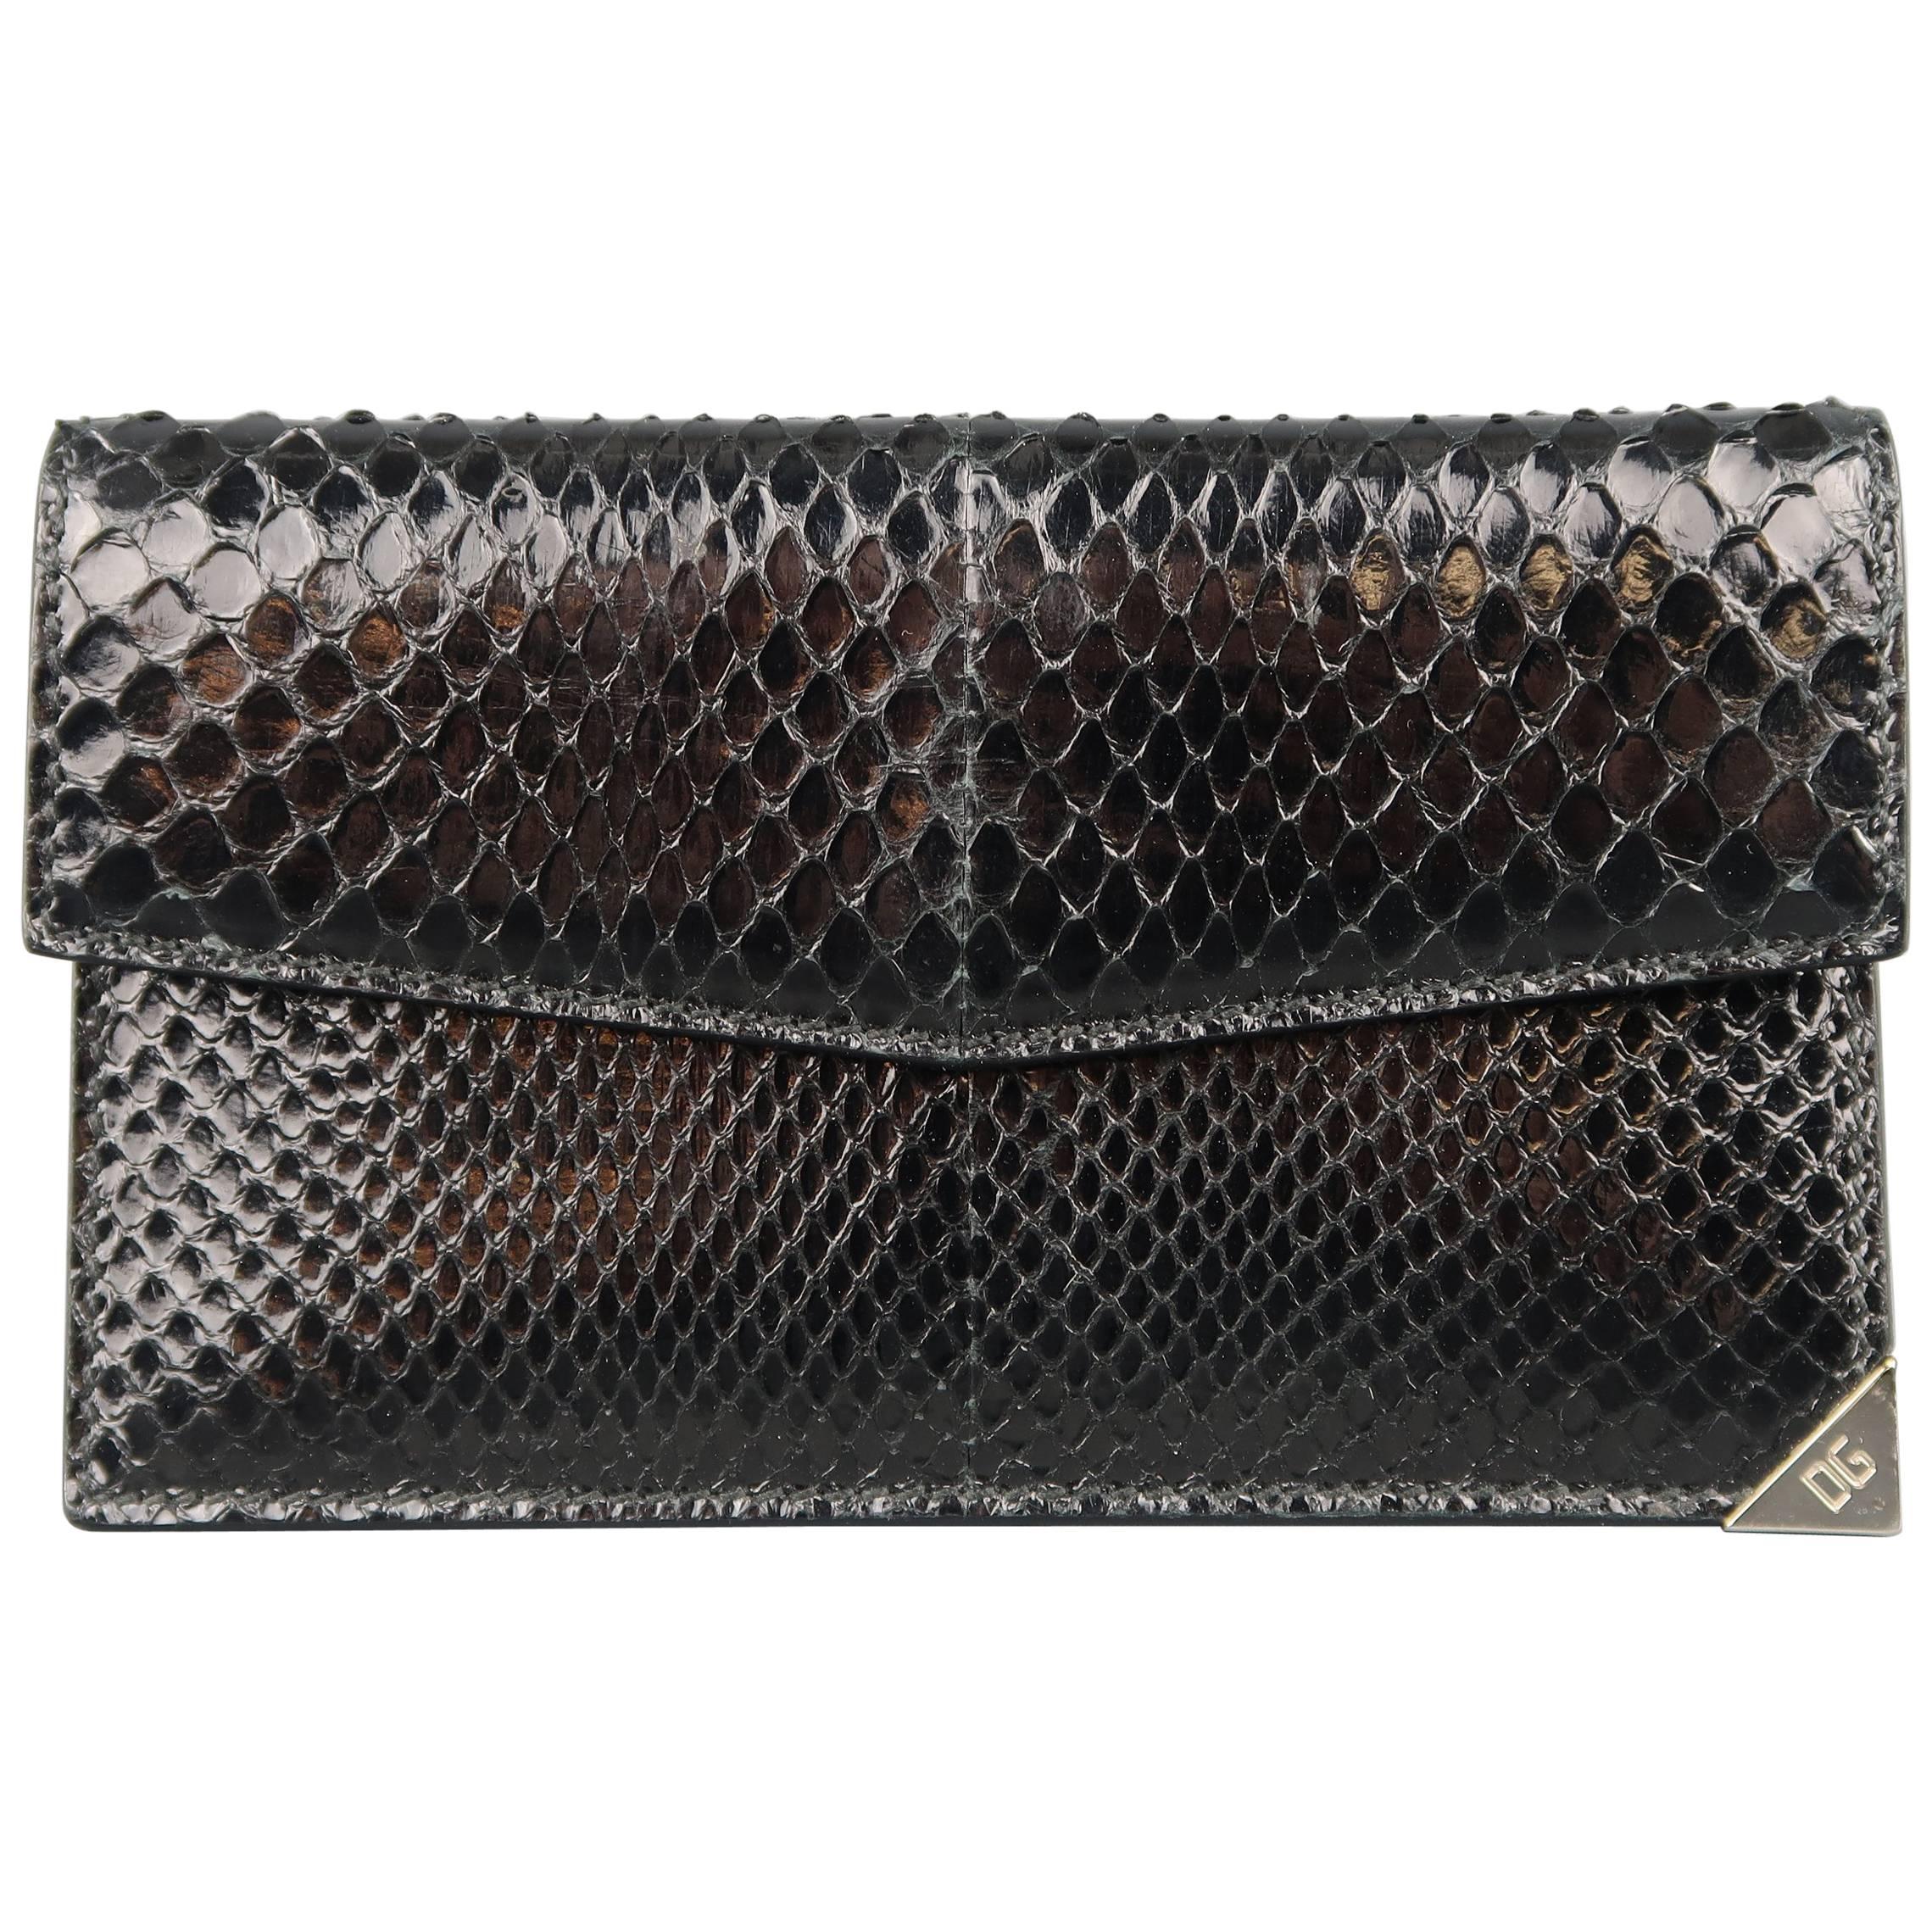 DOLCE & GABBANA Black Snake Skin Leather Card Holder Wallet